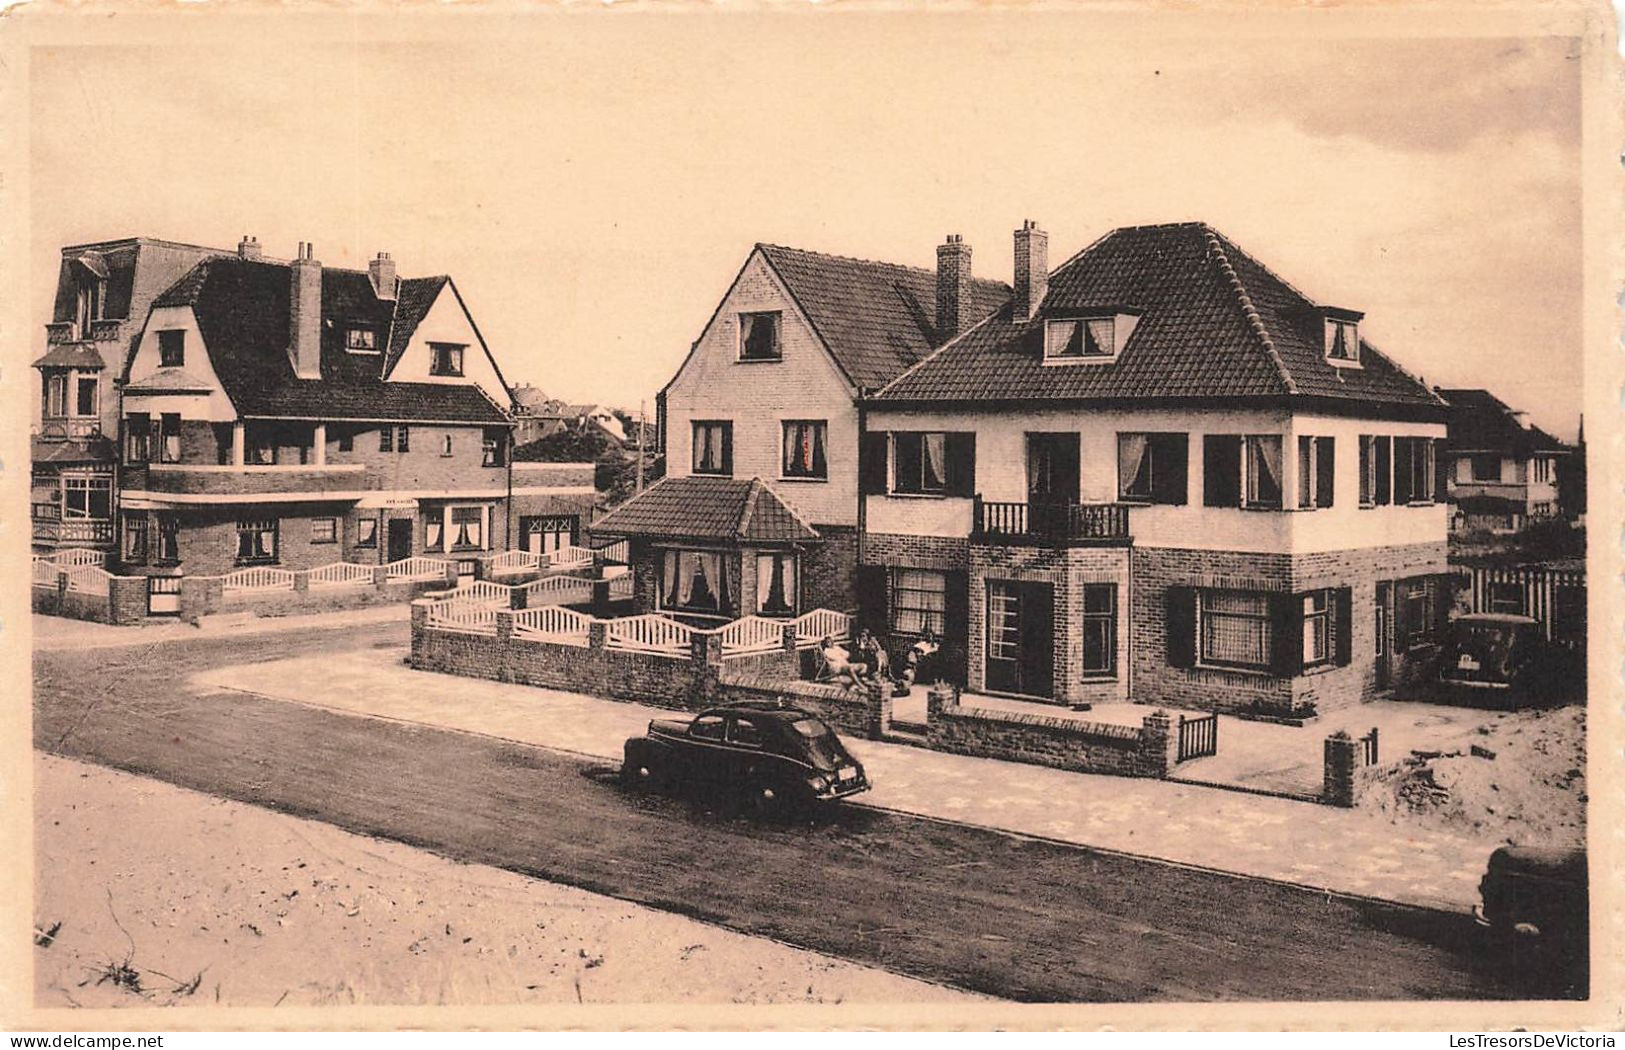 BELGIQUE - St Idesbald - Vue Générale Des Villas "reposoir" Et "vent Frivolant" - Carte Postale Ancienne - Koksijde